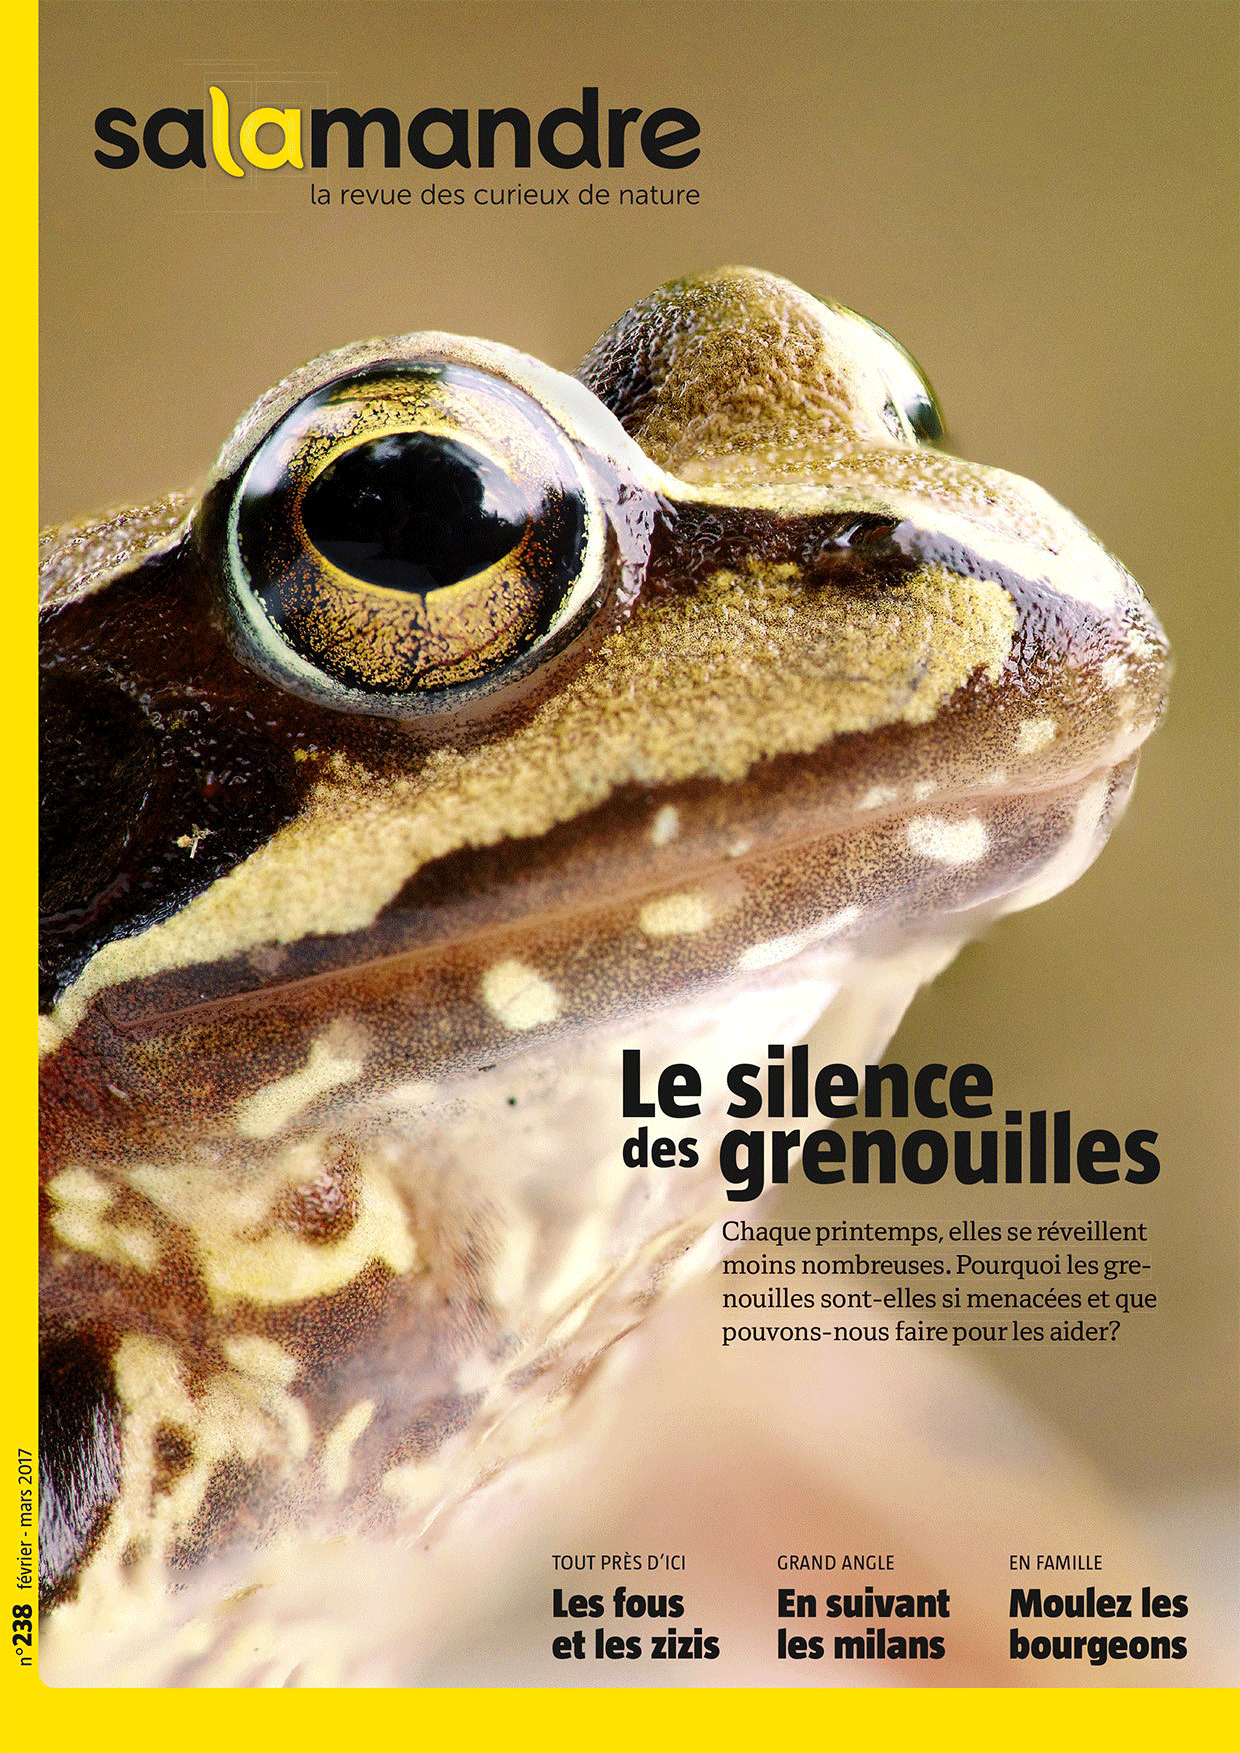 La couverture de La Salamandre des mois de février-mars 2016. [Salamandre.net]